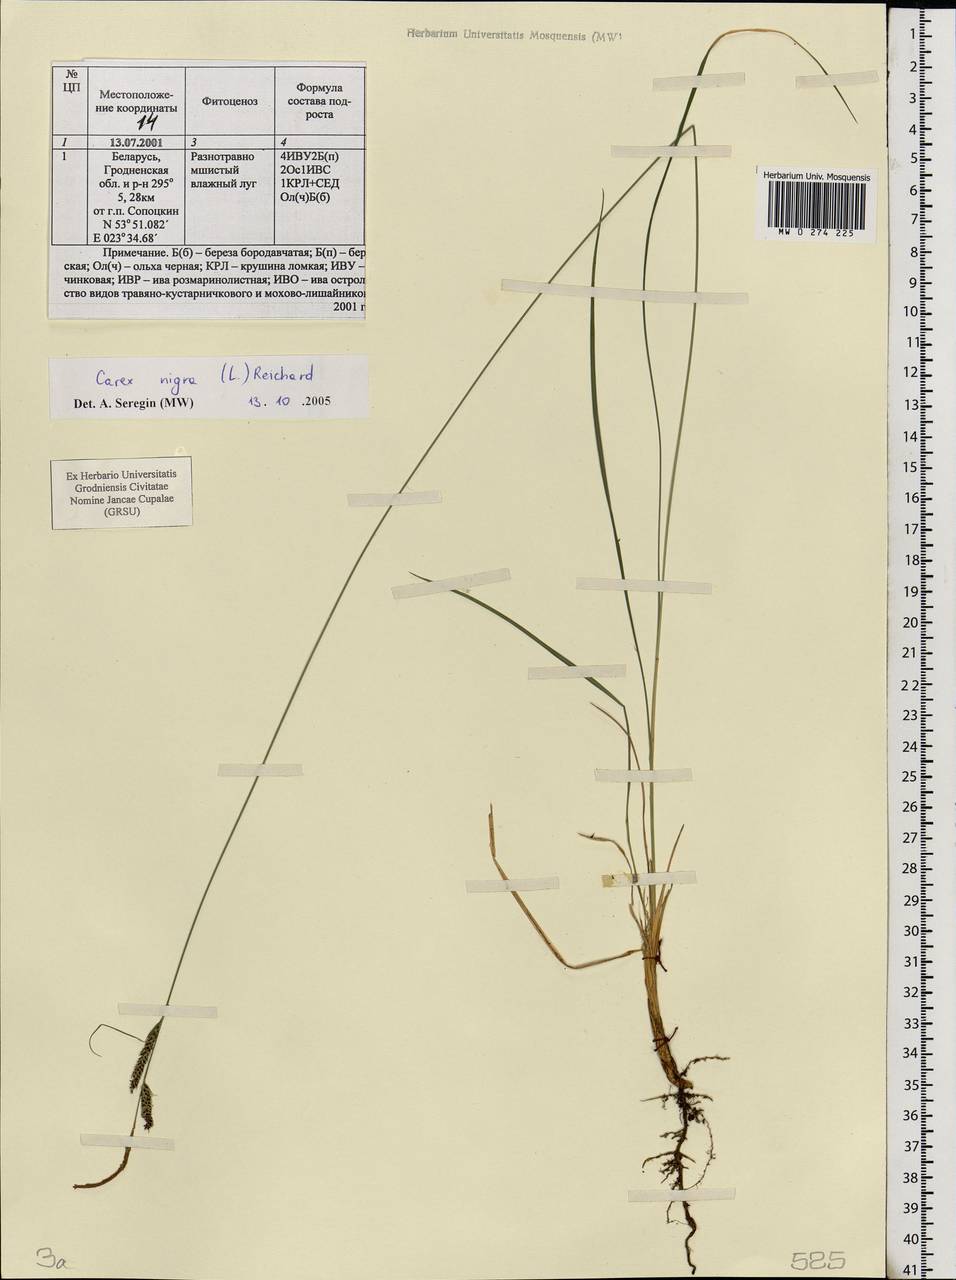 Carex nigra (L.) Reichard, Eastern Europe, Belarus (E3a) (Belarus)